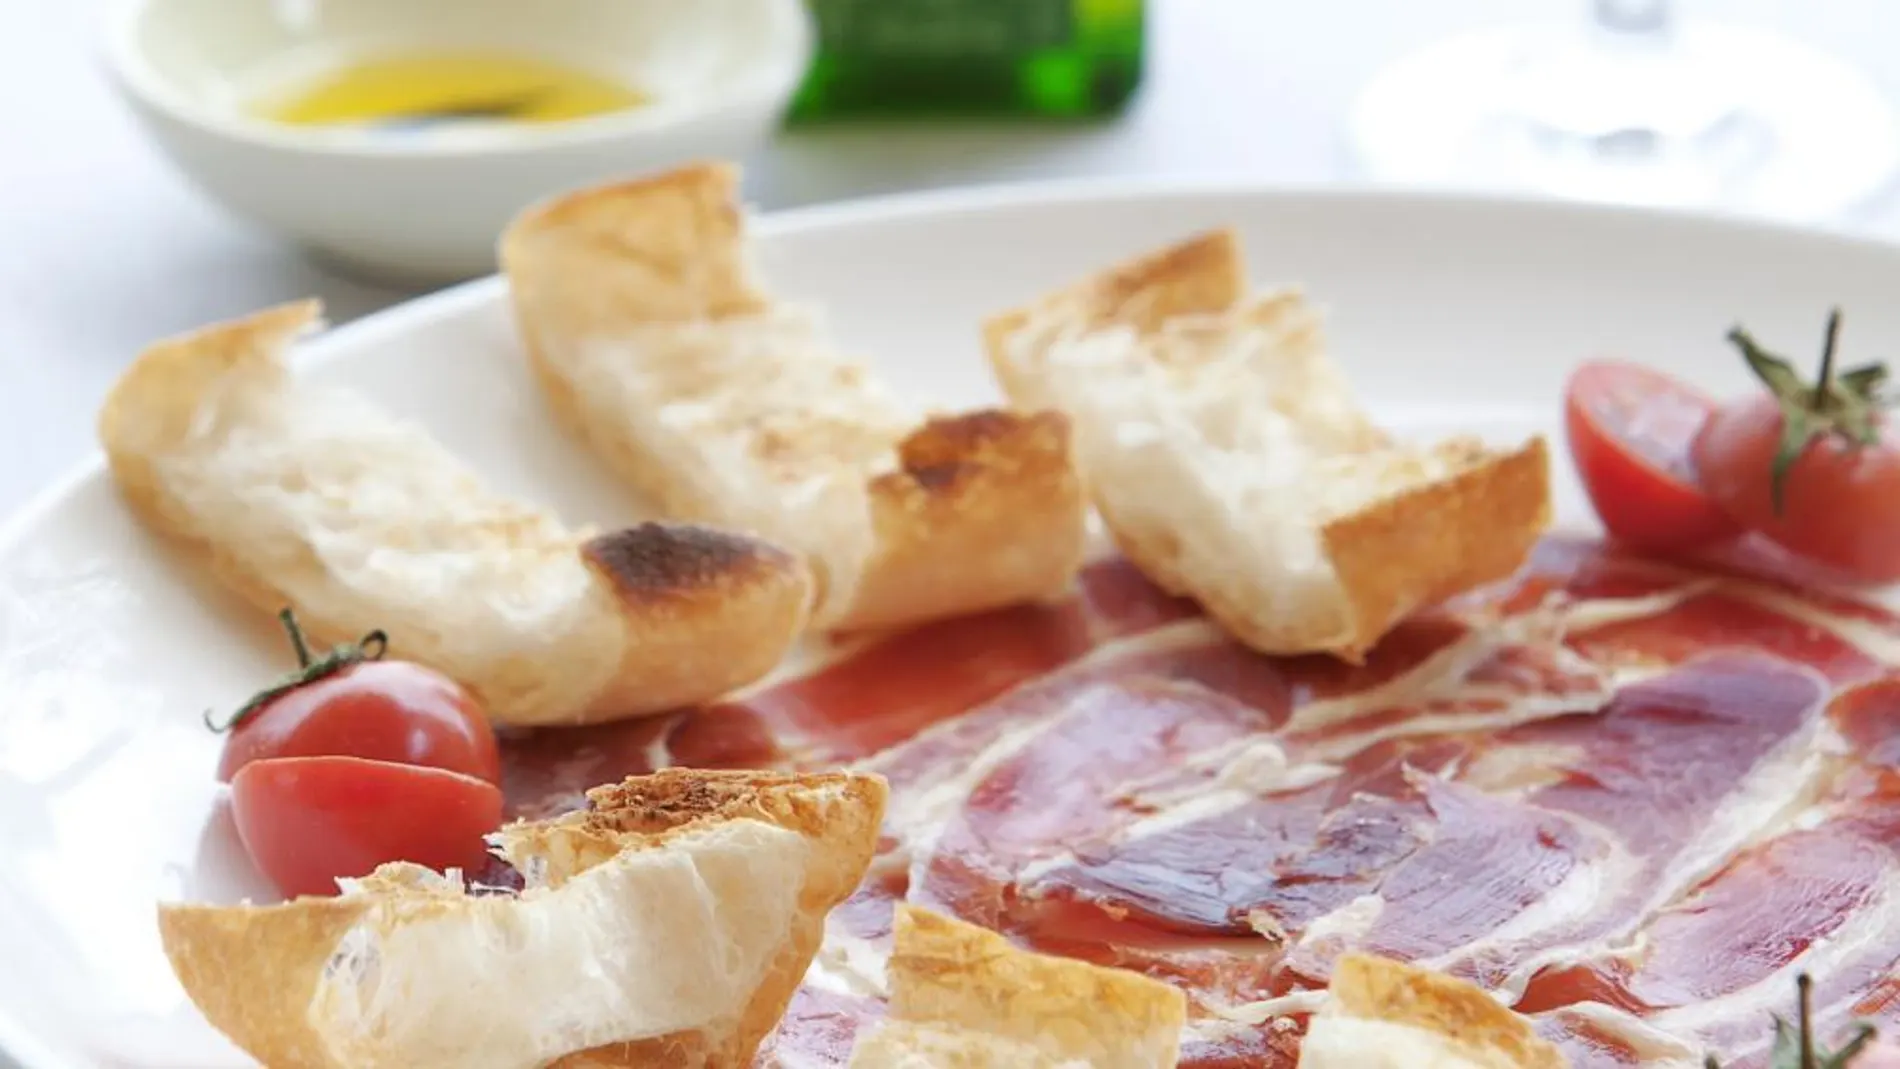 El pan tumaca con aceite de la zona es uno de los platos típicos de Cataluña